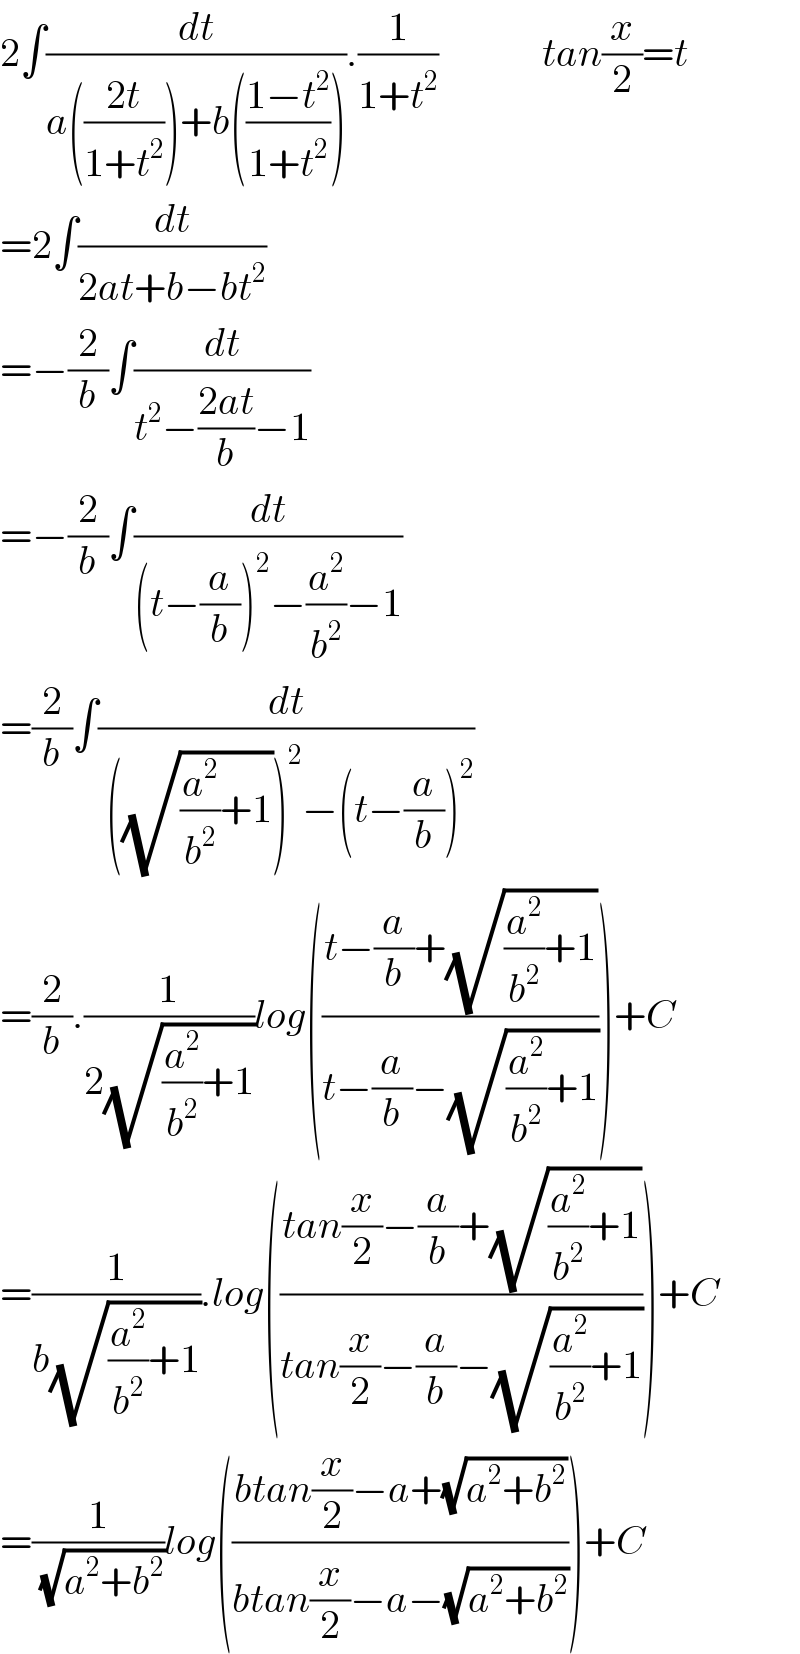 2∫(dt/(a(((2t)/(1+t^2 )))+b(((1−t^2 )/(1+t^2 ))))).(1/(1+t^2 ))             tan(x/2)=t  =2∫(dt/(2at+b−bt^2 ))  =−(2/b)∫(dt/(t^2 −((2at)/b)−1))  =−(2/b)∫(dt/((t−(a/b))^2 −(a^2 /b^2 )−1))  =(2/b)∫(dt/( ((√((a^2 /b^2 )+1)))^2 −(t−(a/b))^2 ))  =(2/b).(1/(2(√((a^2 /b^2 )+1))))log(((t−(a/b)+(√((a^2 /b^2 )+1)))/(t−(a/b)−(√((a^2 /b^2 )+1)))))+C  =(1/(b(√((a^2 /b^2 )+1)))).log(((tan(x/2)−(a/b)+(√((a^2 /b^2 )+1)))/(tan(x/2)−(a/b)−(√((a^2 /b^2 )+1)))))+C  =(1/( (√(a^2 +b^2 ))))log(((btan(x/2)−a+(√(a^2 +b^2 )))/(btan(x/2)−a−(√(a^2 +b^2 )))))+C  